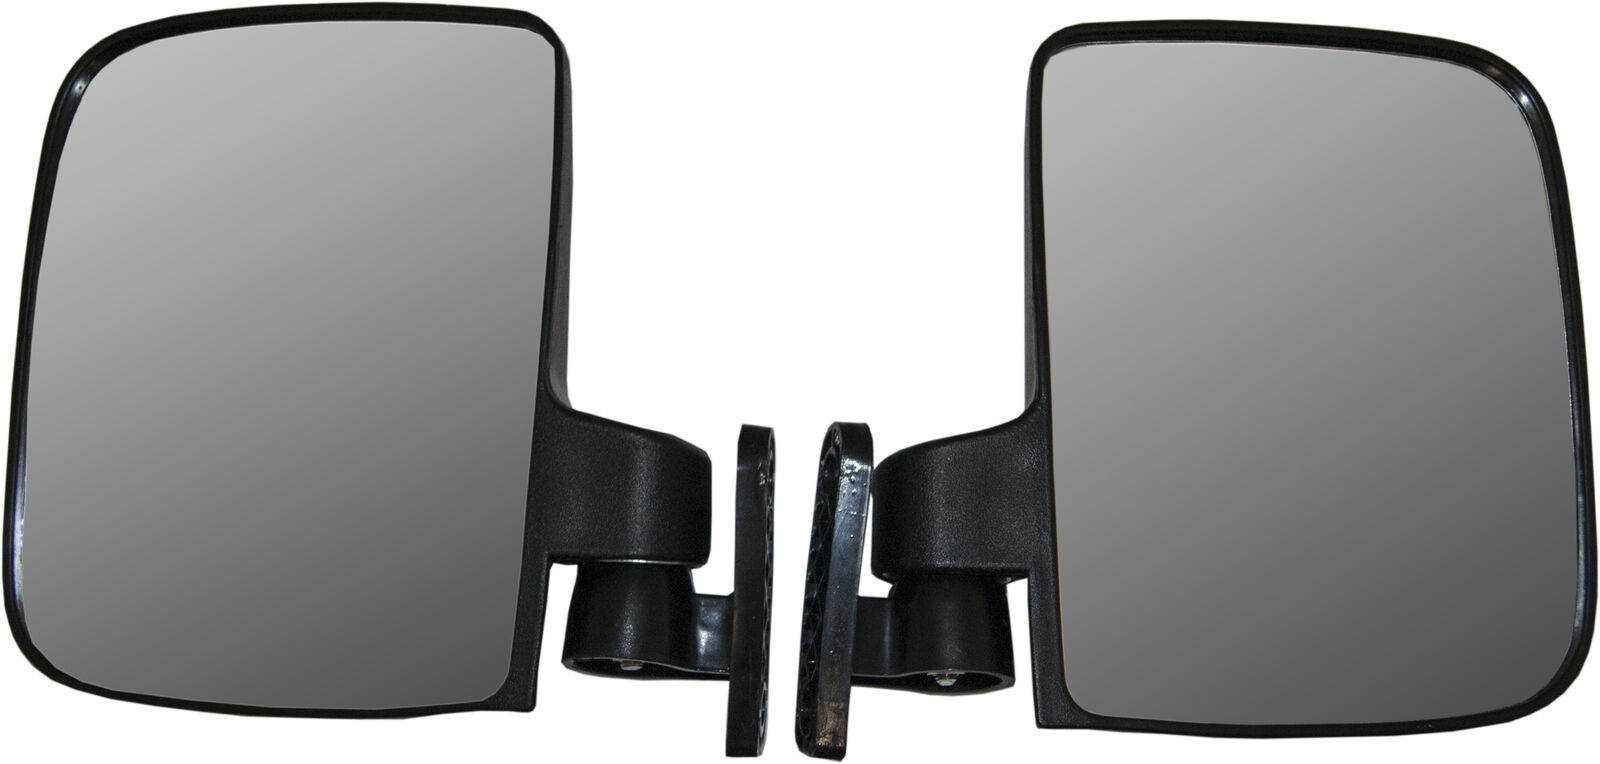 Pair of Golf Cart Rear View Mirrors, 5" x 7" Club Car EZGO Mirrors